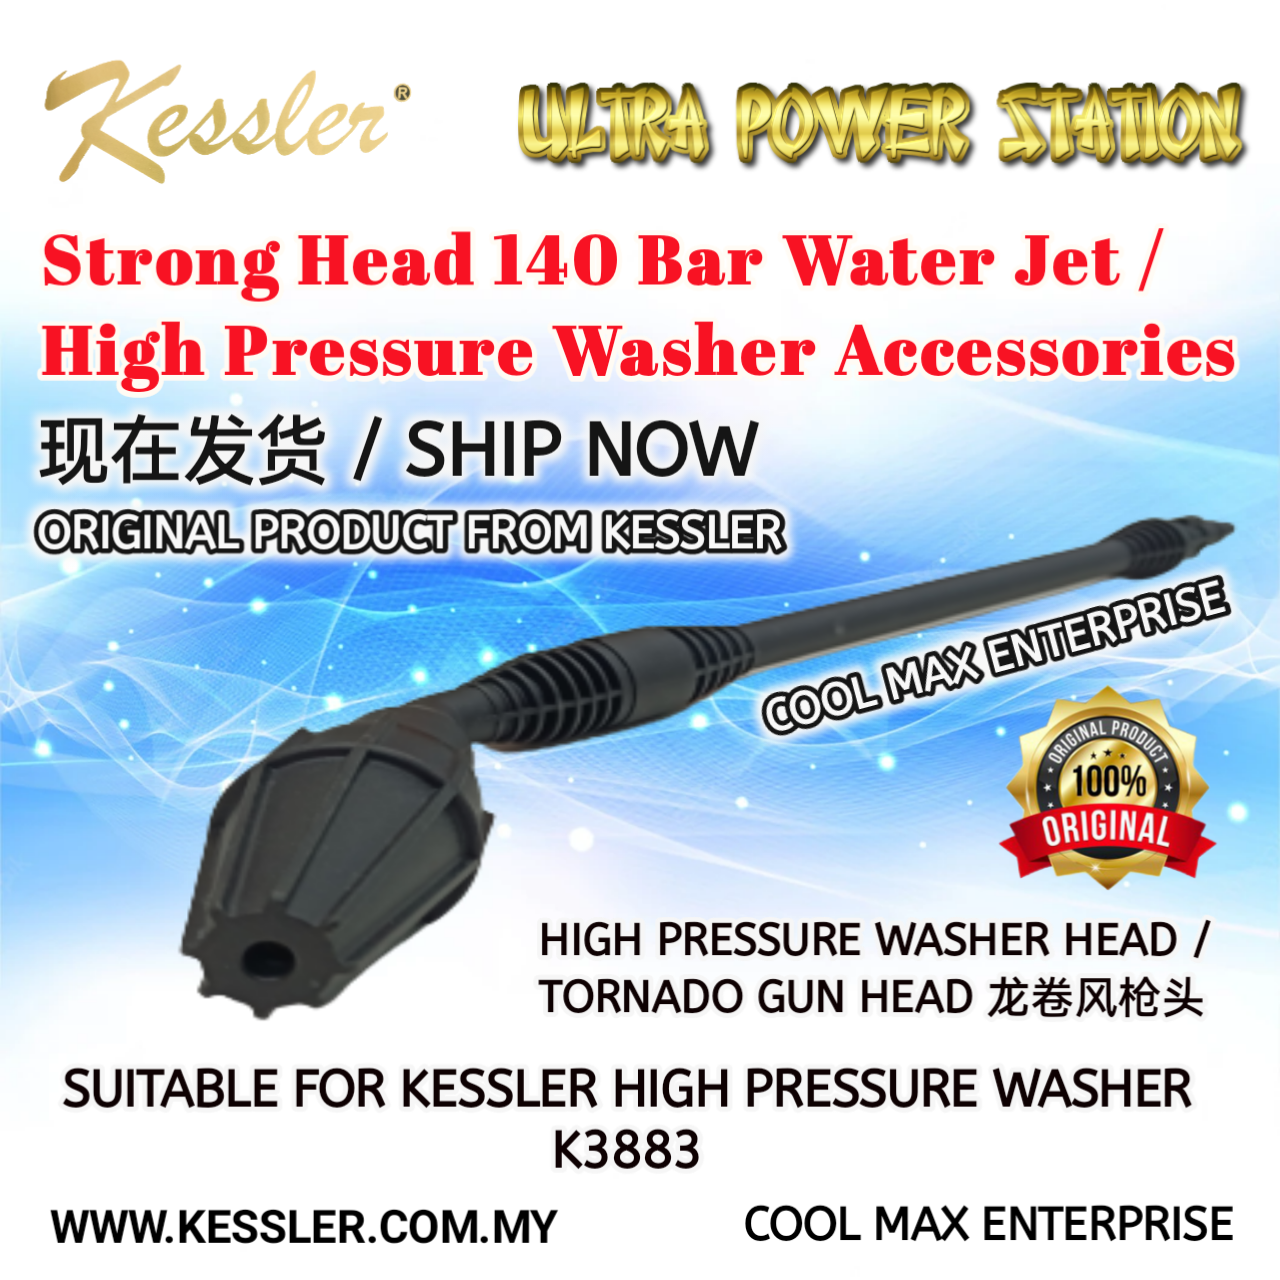 Kessler water jet